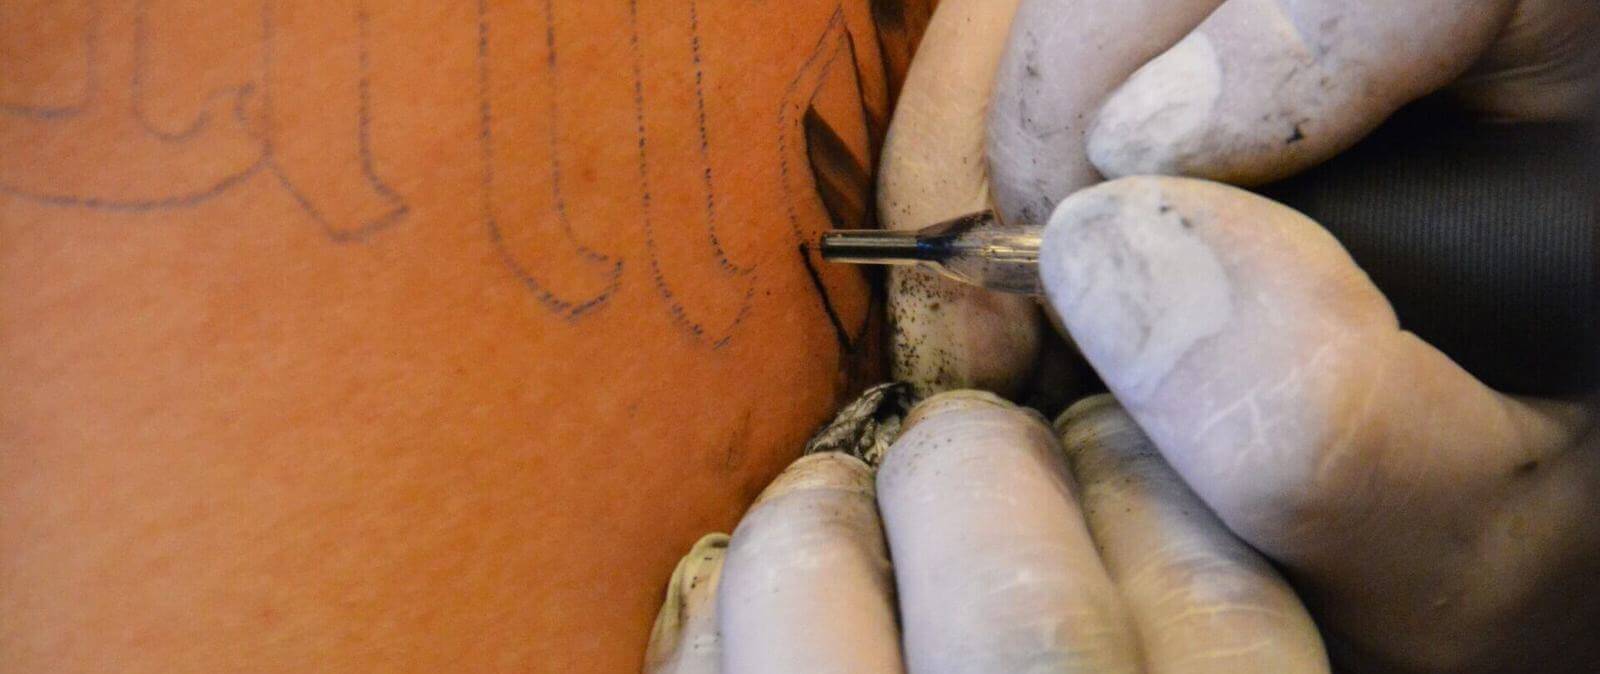 Una mujer con un tatuaje en la zona lumbar, ¿podrá recibir anestesia epidural en el parto? · Maldita.es - Periodismo para que no te la cuelen